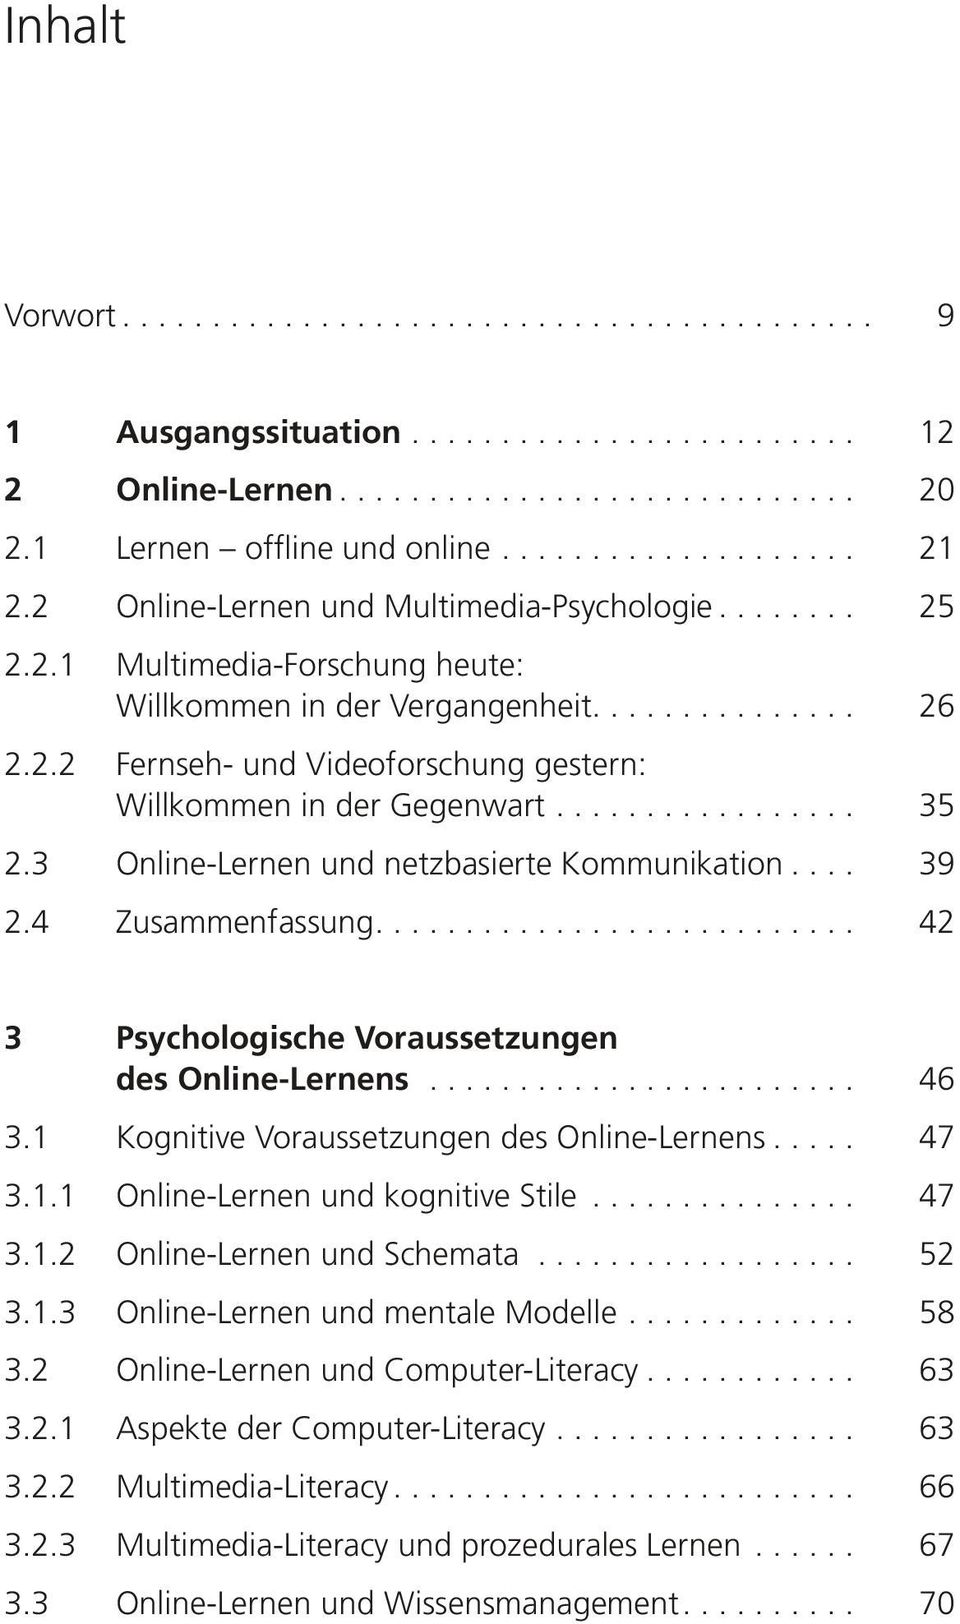 ... 42 3 Psychologische Voraussetzungen des Online-Lernens... 46 3.1 Kognitive Voraussetzungen des Online-Lernens... 47 3.1.1 Online-Lernen und kognitive Stile... 47 3.1.2 Online-Lernen und Schemata.